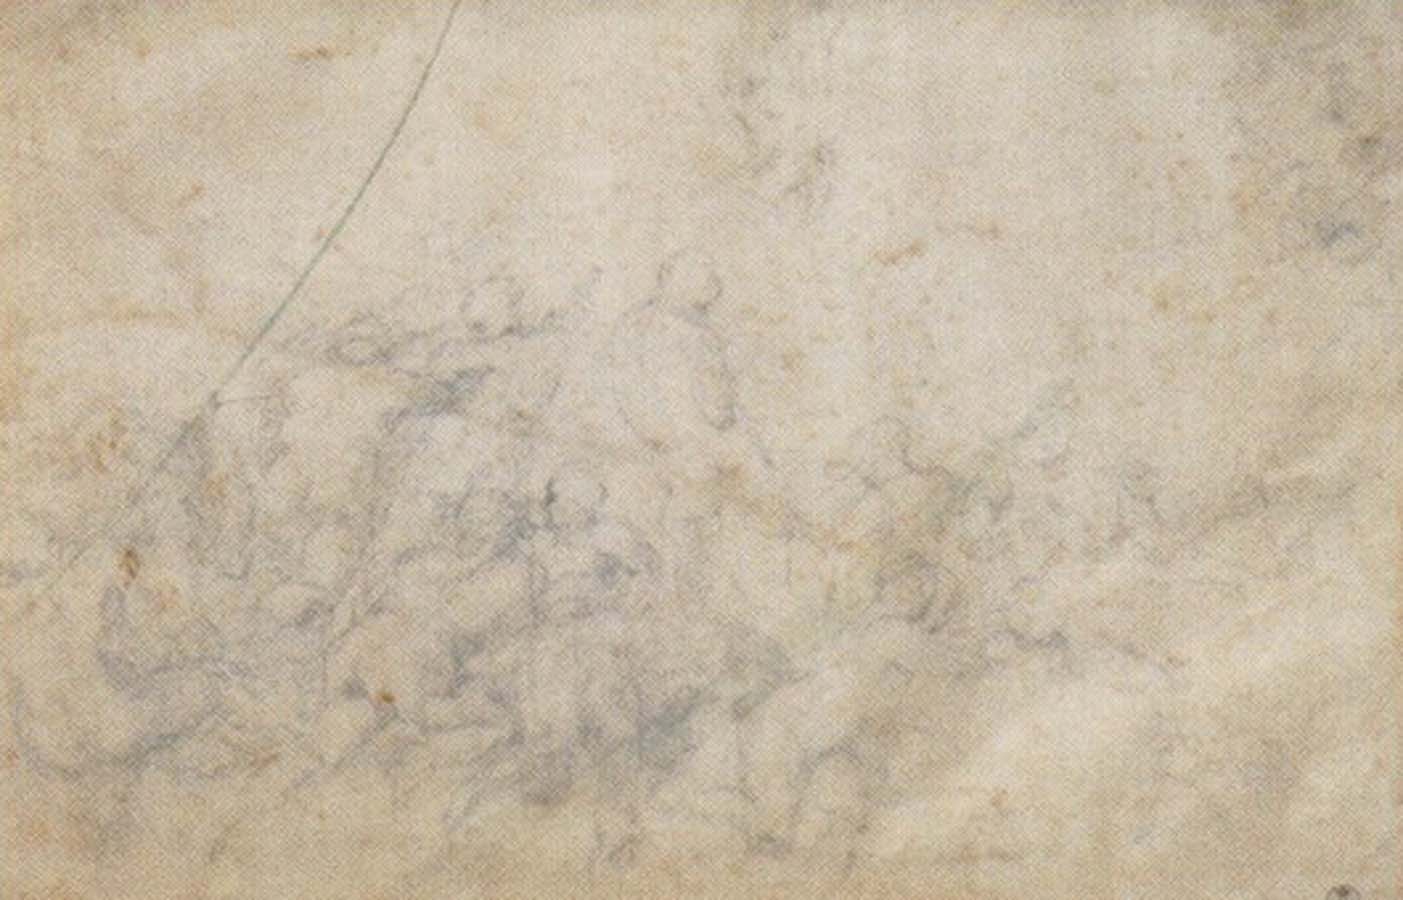 unknow artist Michelangelo